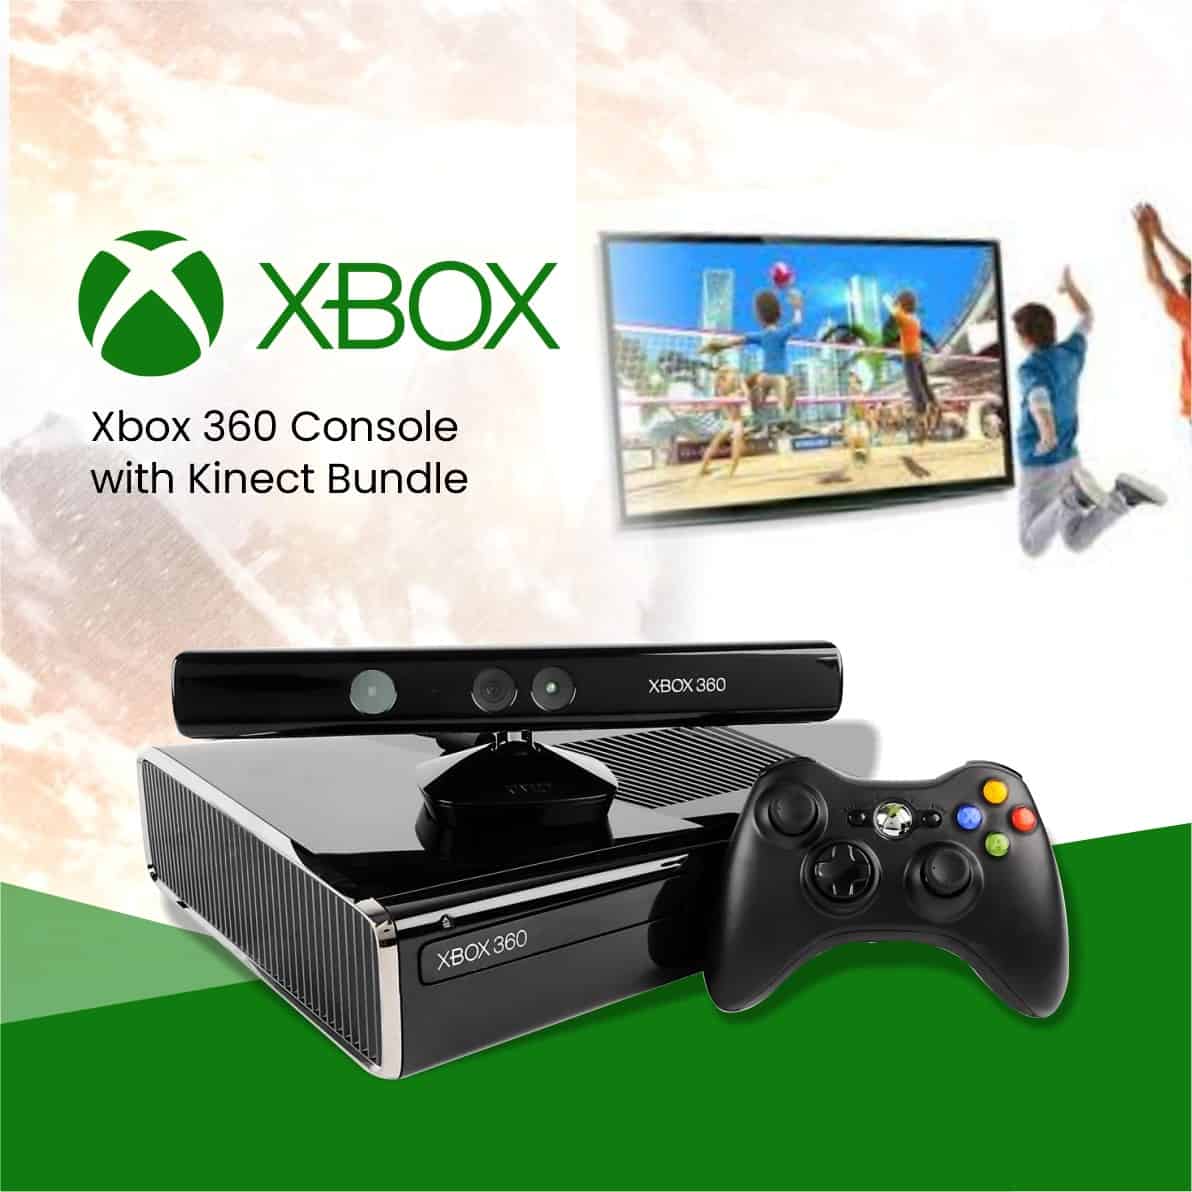 Xbox 360 Slim, 1 TB, 152 Tob Games Free